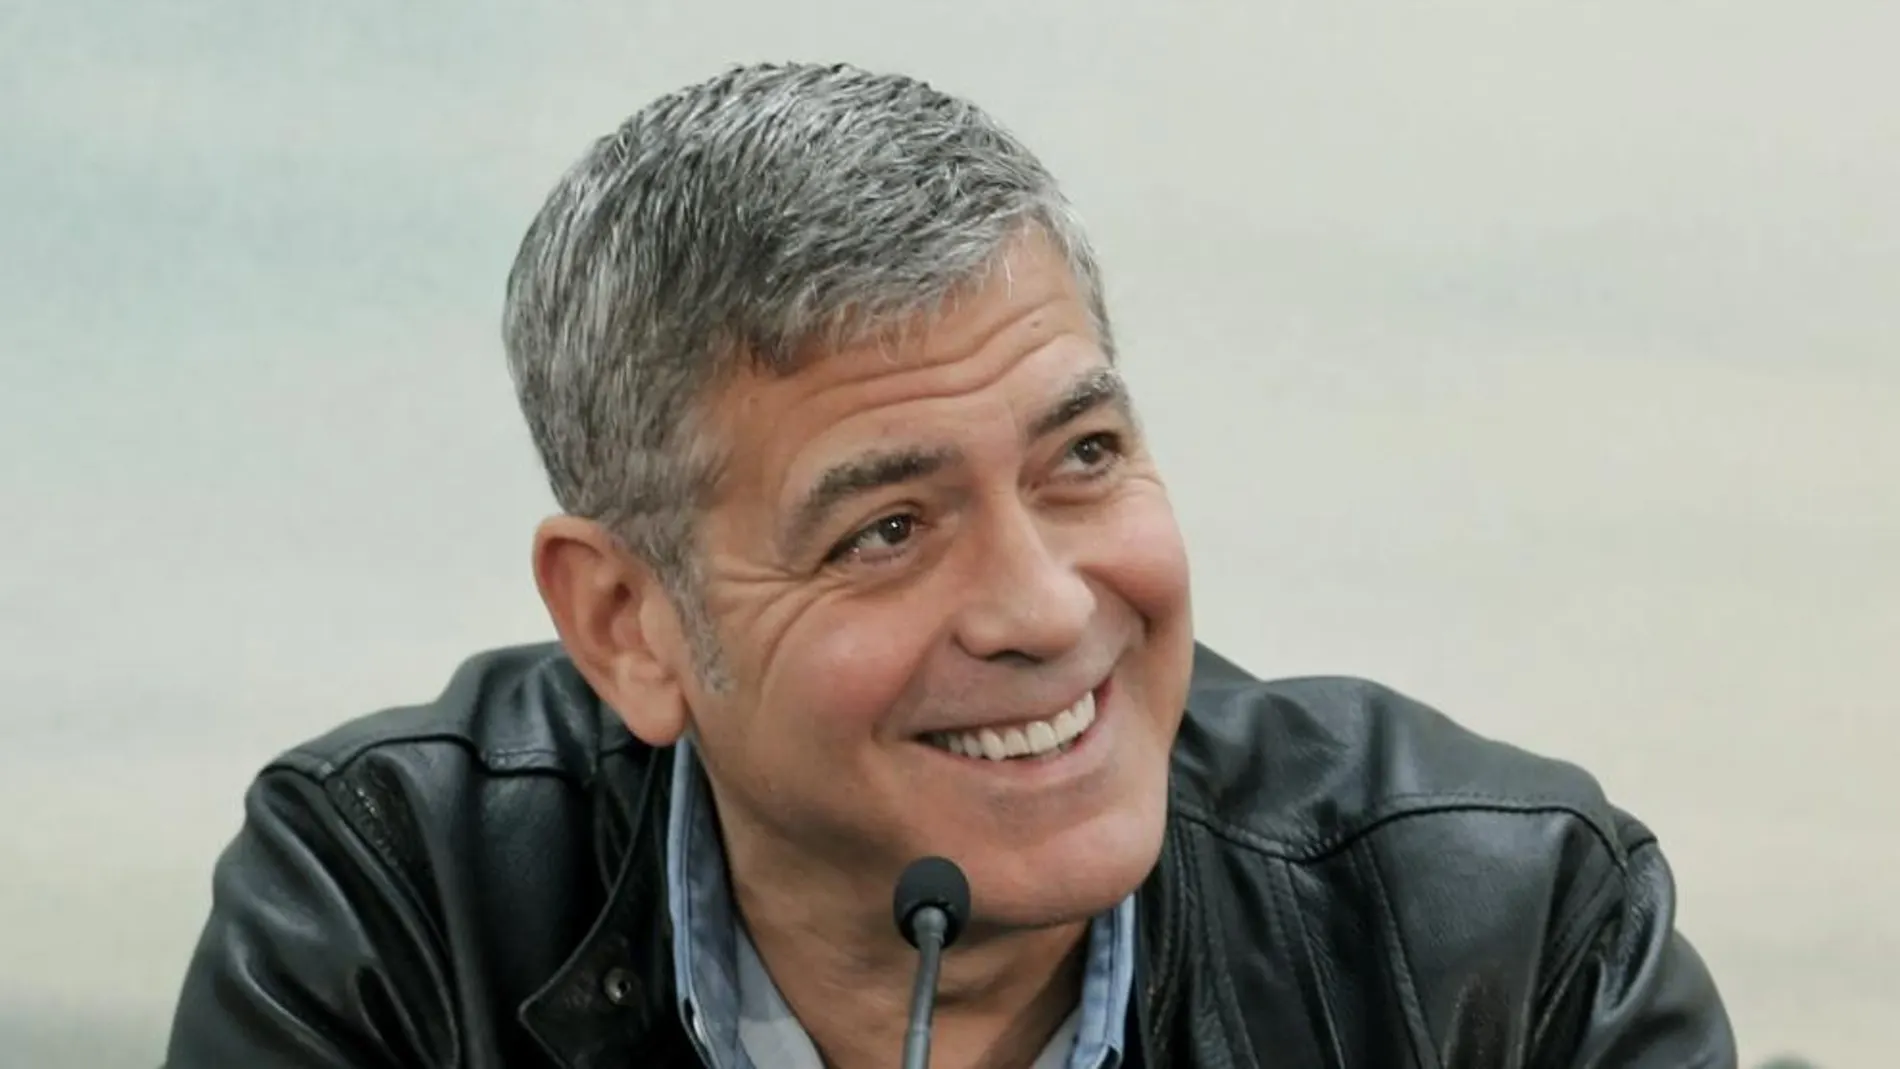 El actor George Clooney, durante la rueda de prensa que ha ofrecido hoy antes de la presentación de su última película, "Tomorrowland", que tiene lugar hoy en la Ciudad de las Artes y las Ciencias de Valencia, donde se rodó parte de la misma.